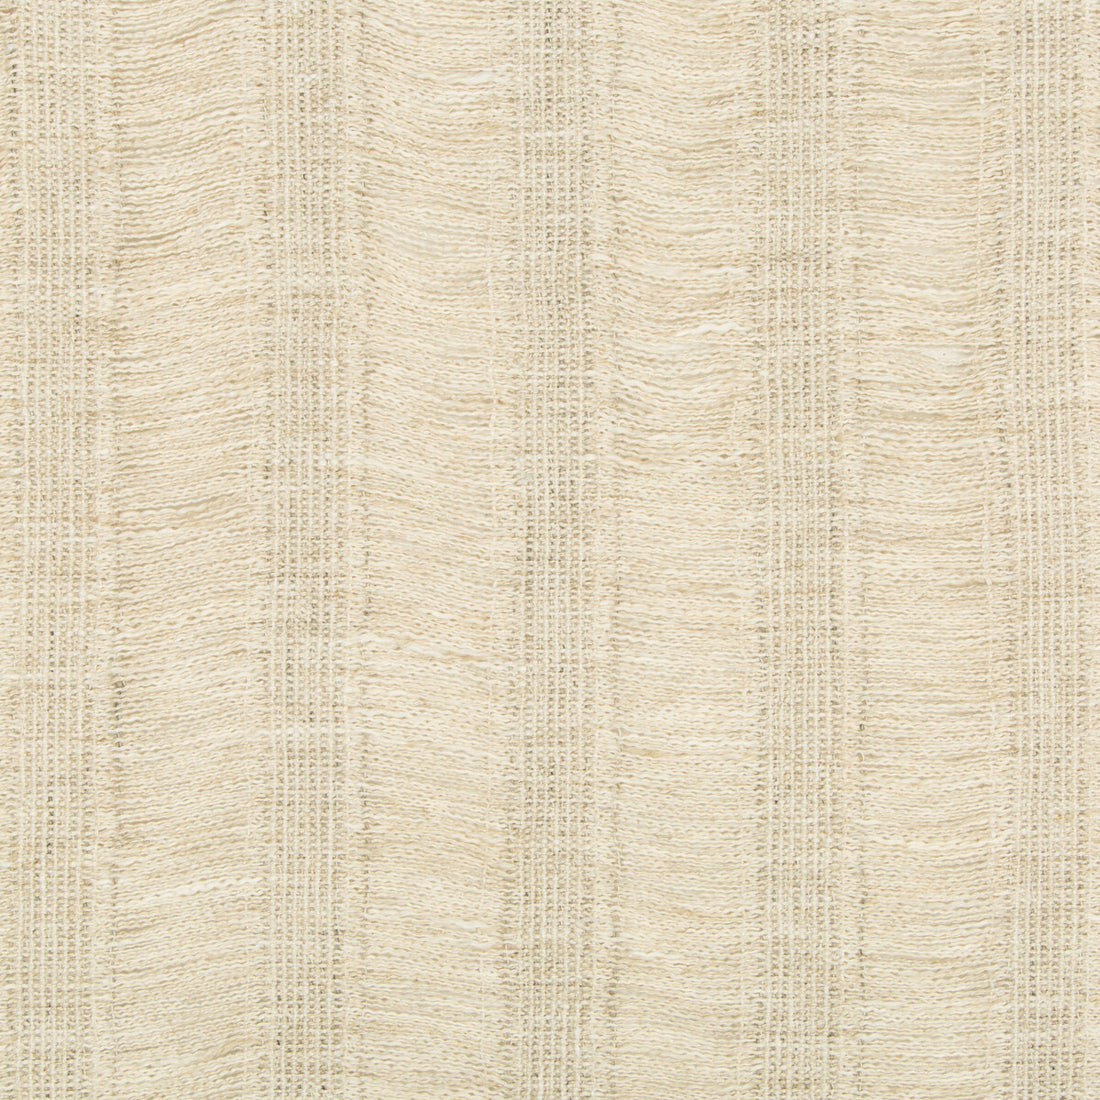 Fermata fabric in cornsilk color - pattern 4482.116.0 - by Kravet Couture in the Sue Firestone Malibu collection